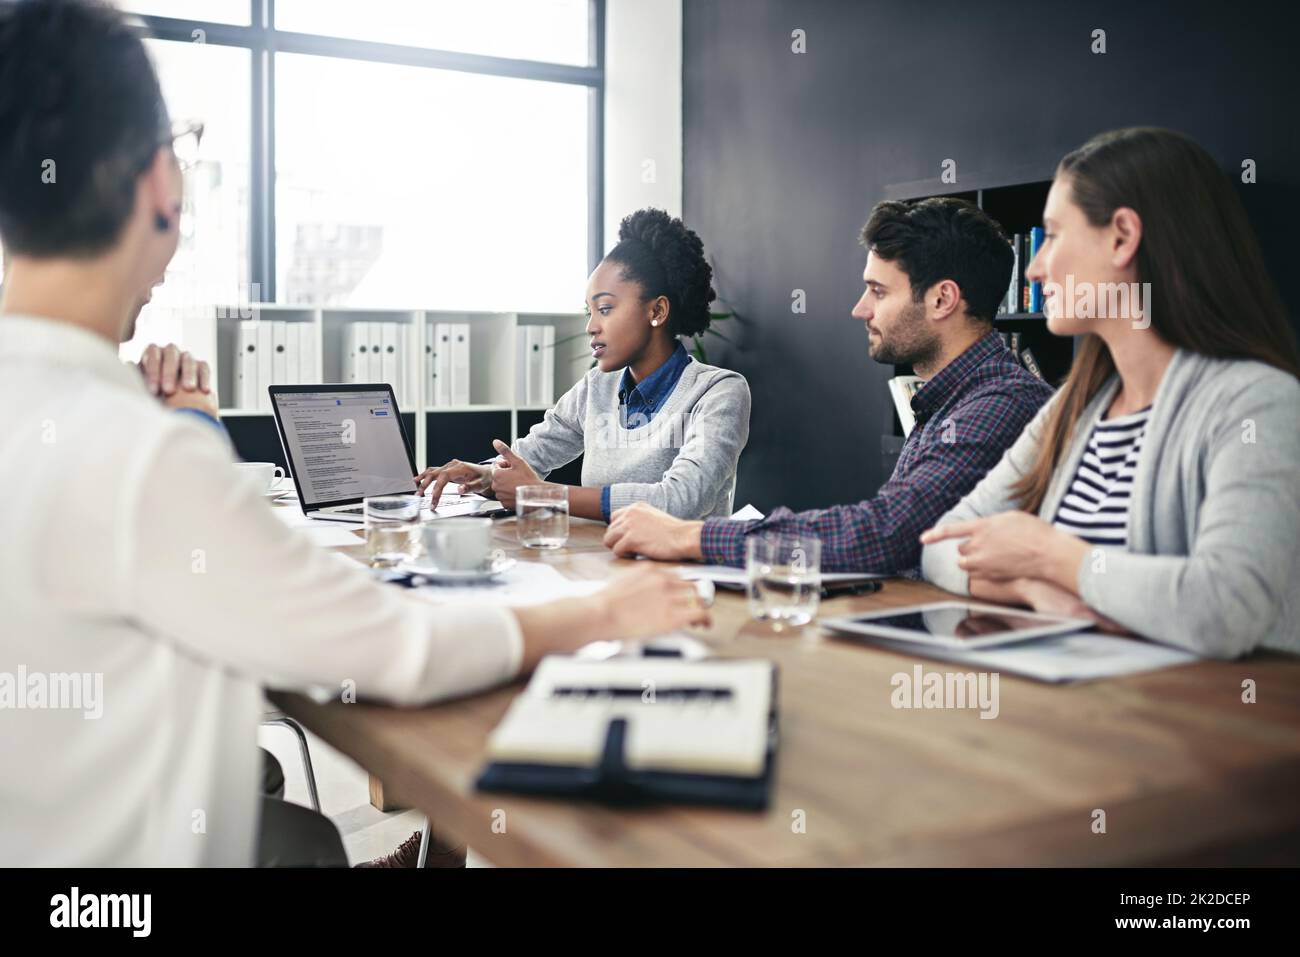 Teilen Sie ihre Ergebnisse mit anderen. Eine Aufnahme einer Gruppe von Geschäftsleuten, die sich im Sitzungssaal treffen. Stockfoto